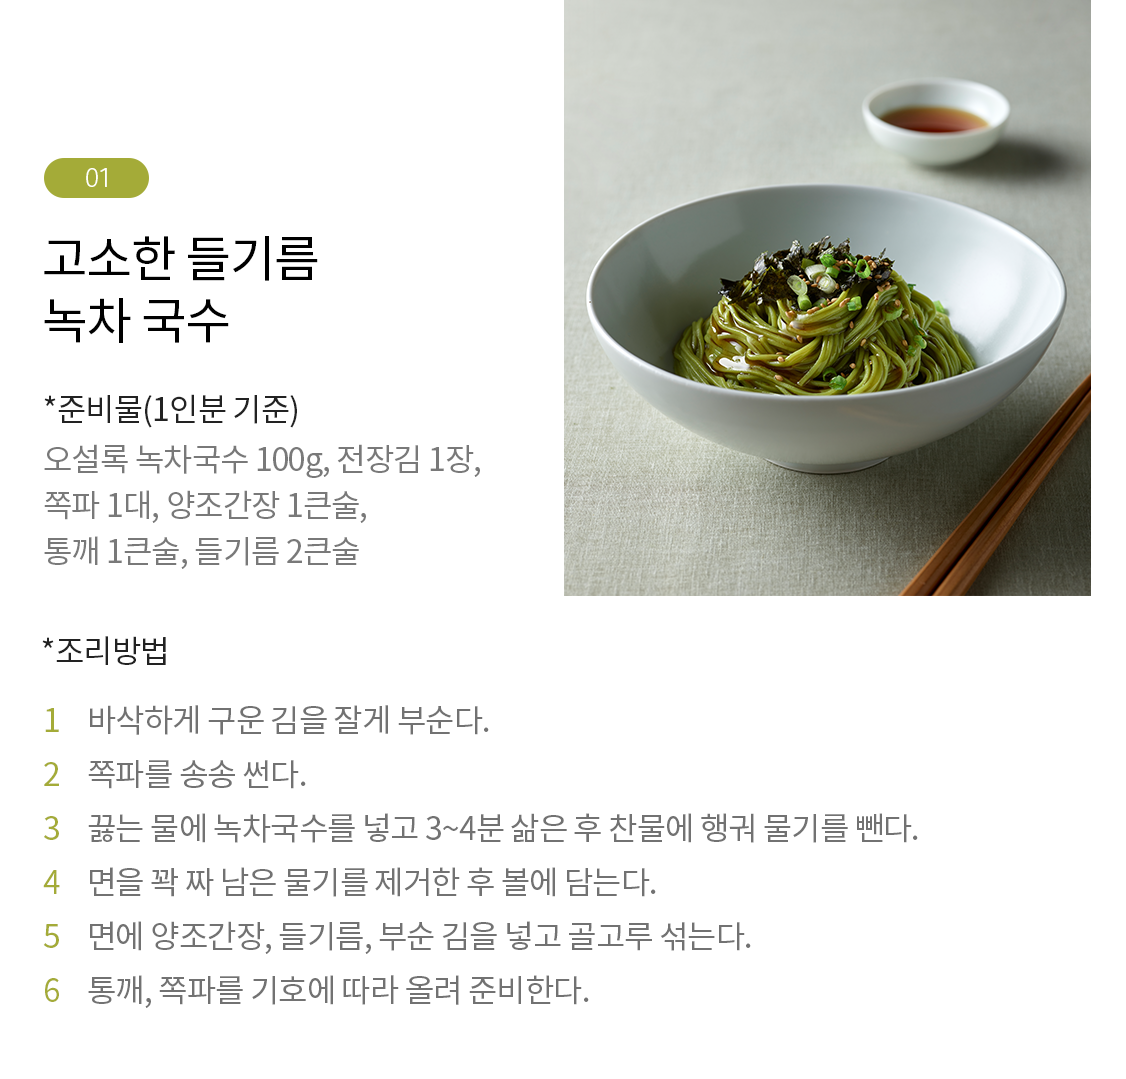 韓國食品-[오설록] 프리미엄녹차국수 300g (100g*3입)